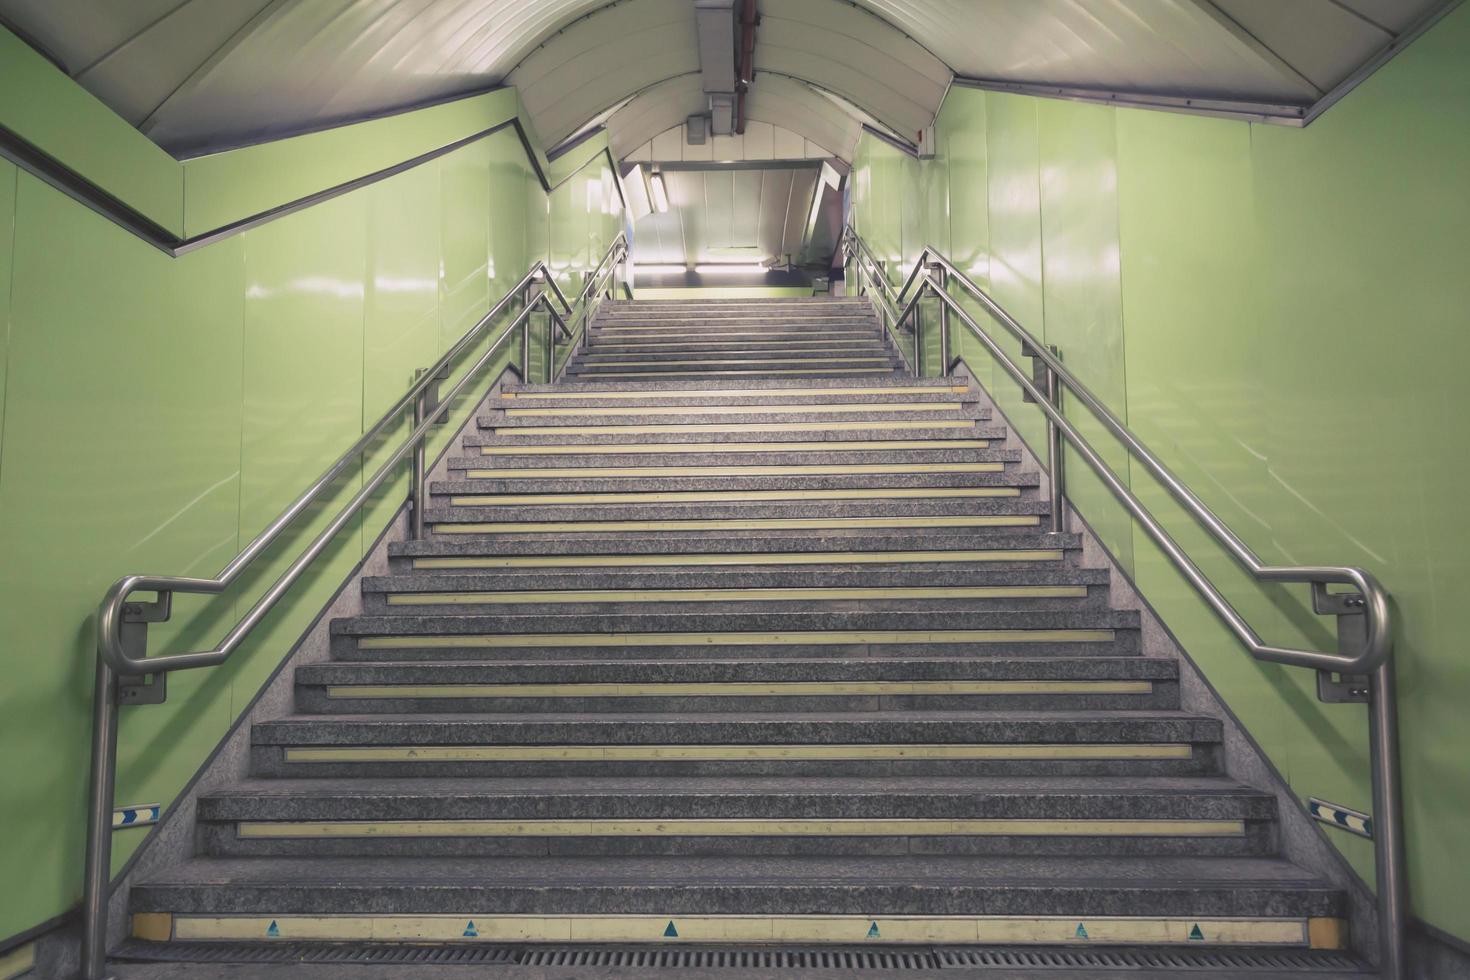 escaliers. escalier de métro ancien à l'intérieur isolé, escaliers en béton dans la ville, marches d'escalier en granit souvent vues sur la station de métro et les points de repère, qui montent. intérieurs architecturaux souterrains. photo